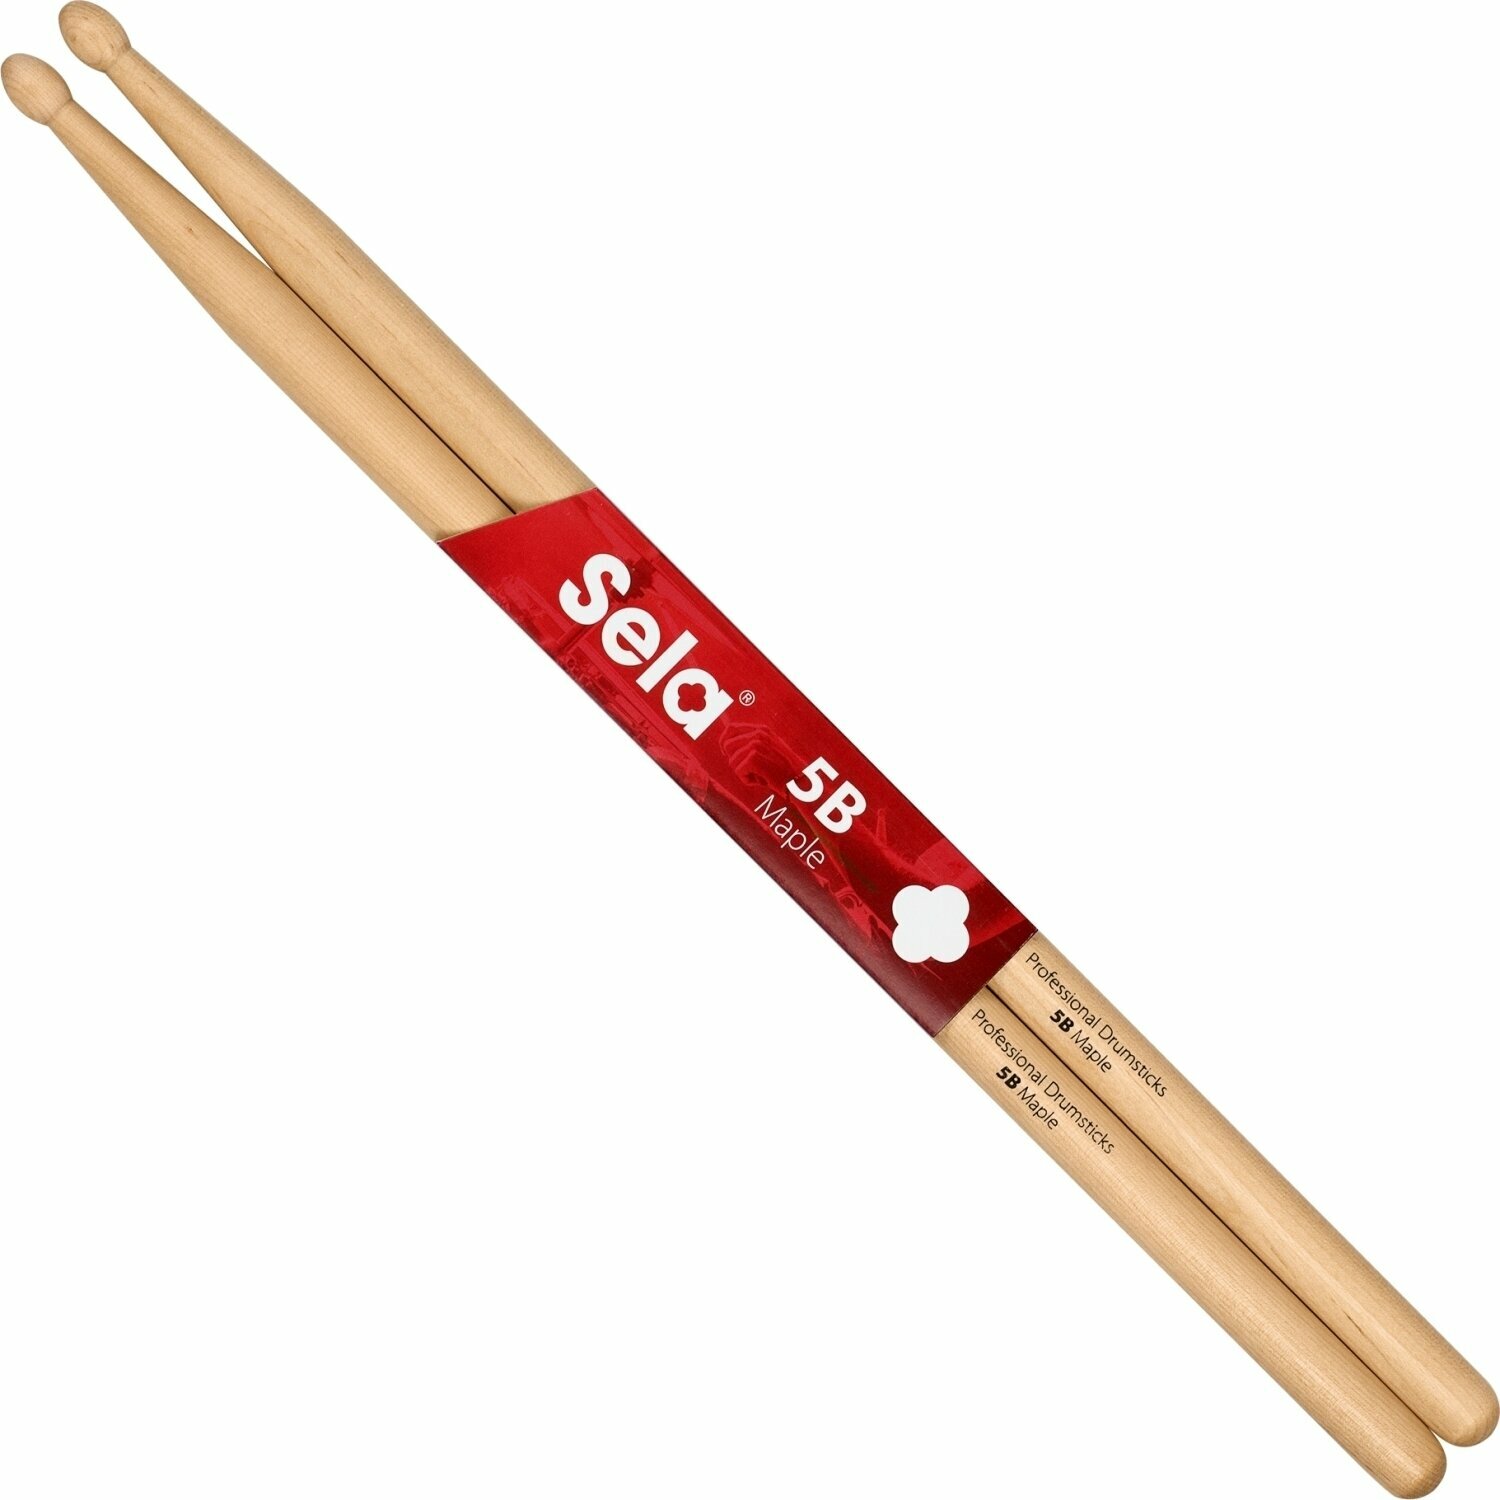 Schlagzeugstöcke Sela SE 273 Professional Drumsticks 5B - 6 Pair Schlagzeugstöcke